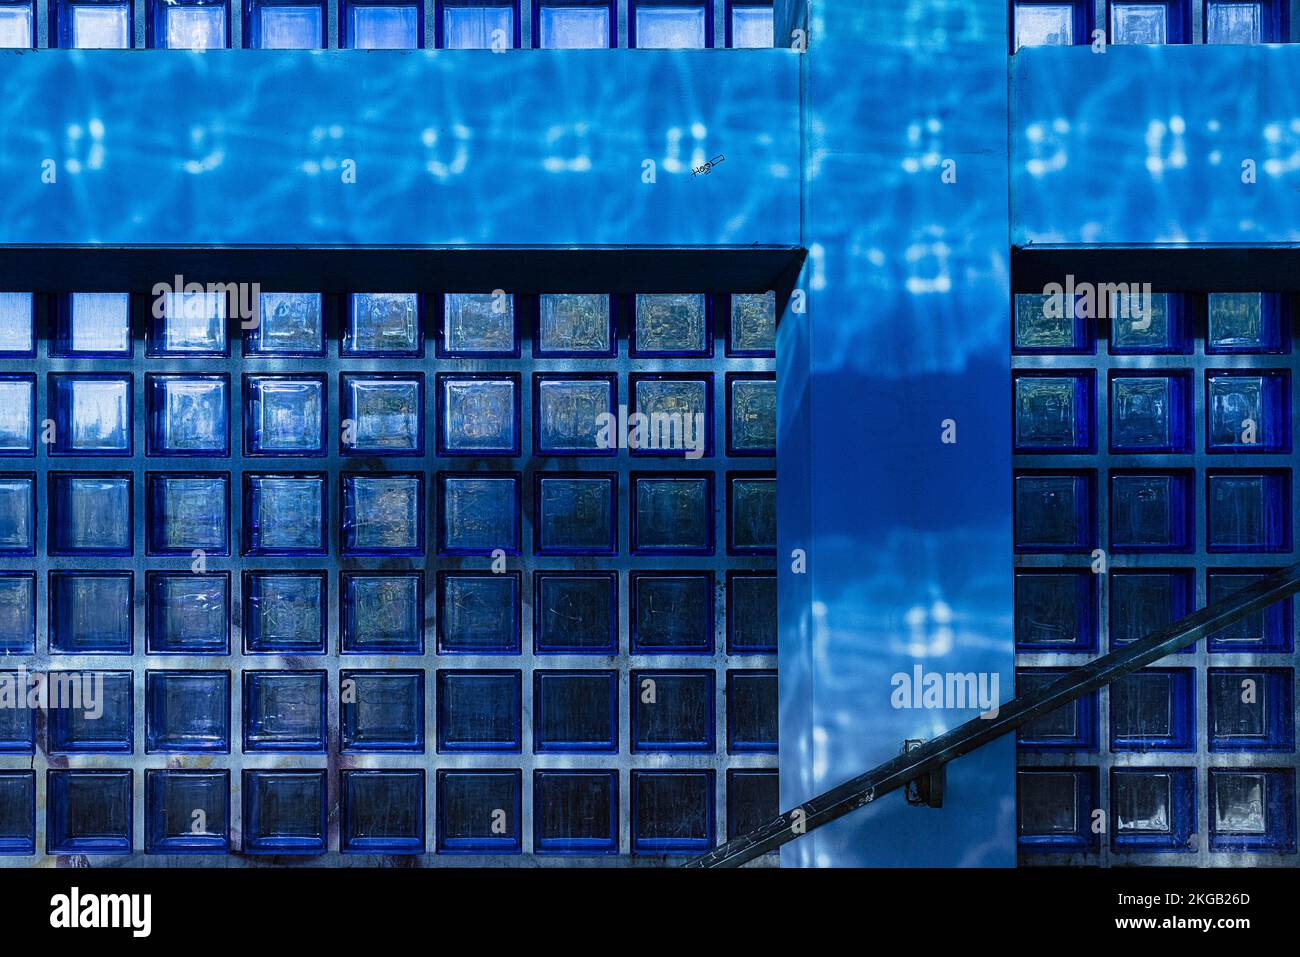 Accesso alla piattaforma S-Bahn, scala in blocchi di vetro blu e cemento a vista, architetto Hansjörg Göritz, progetto per Expo 2000, arco moderno Foto Stock